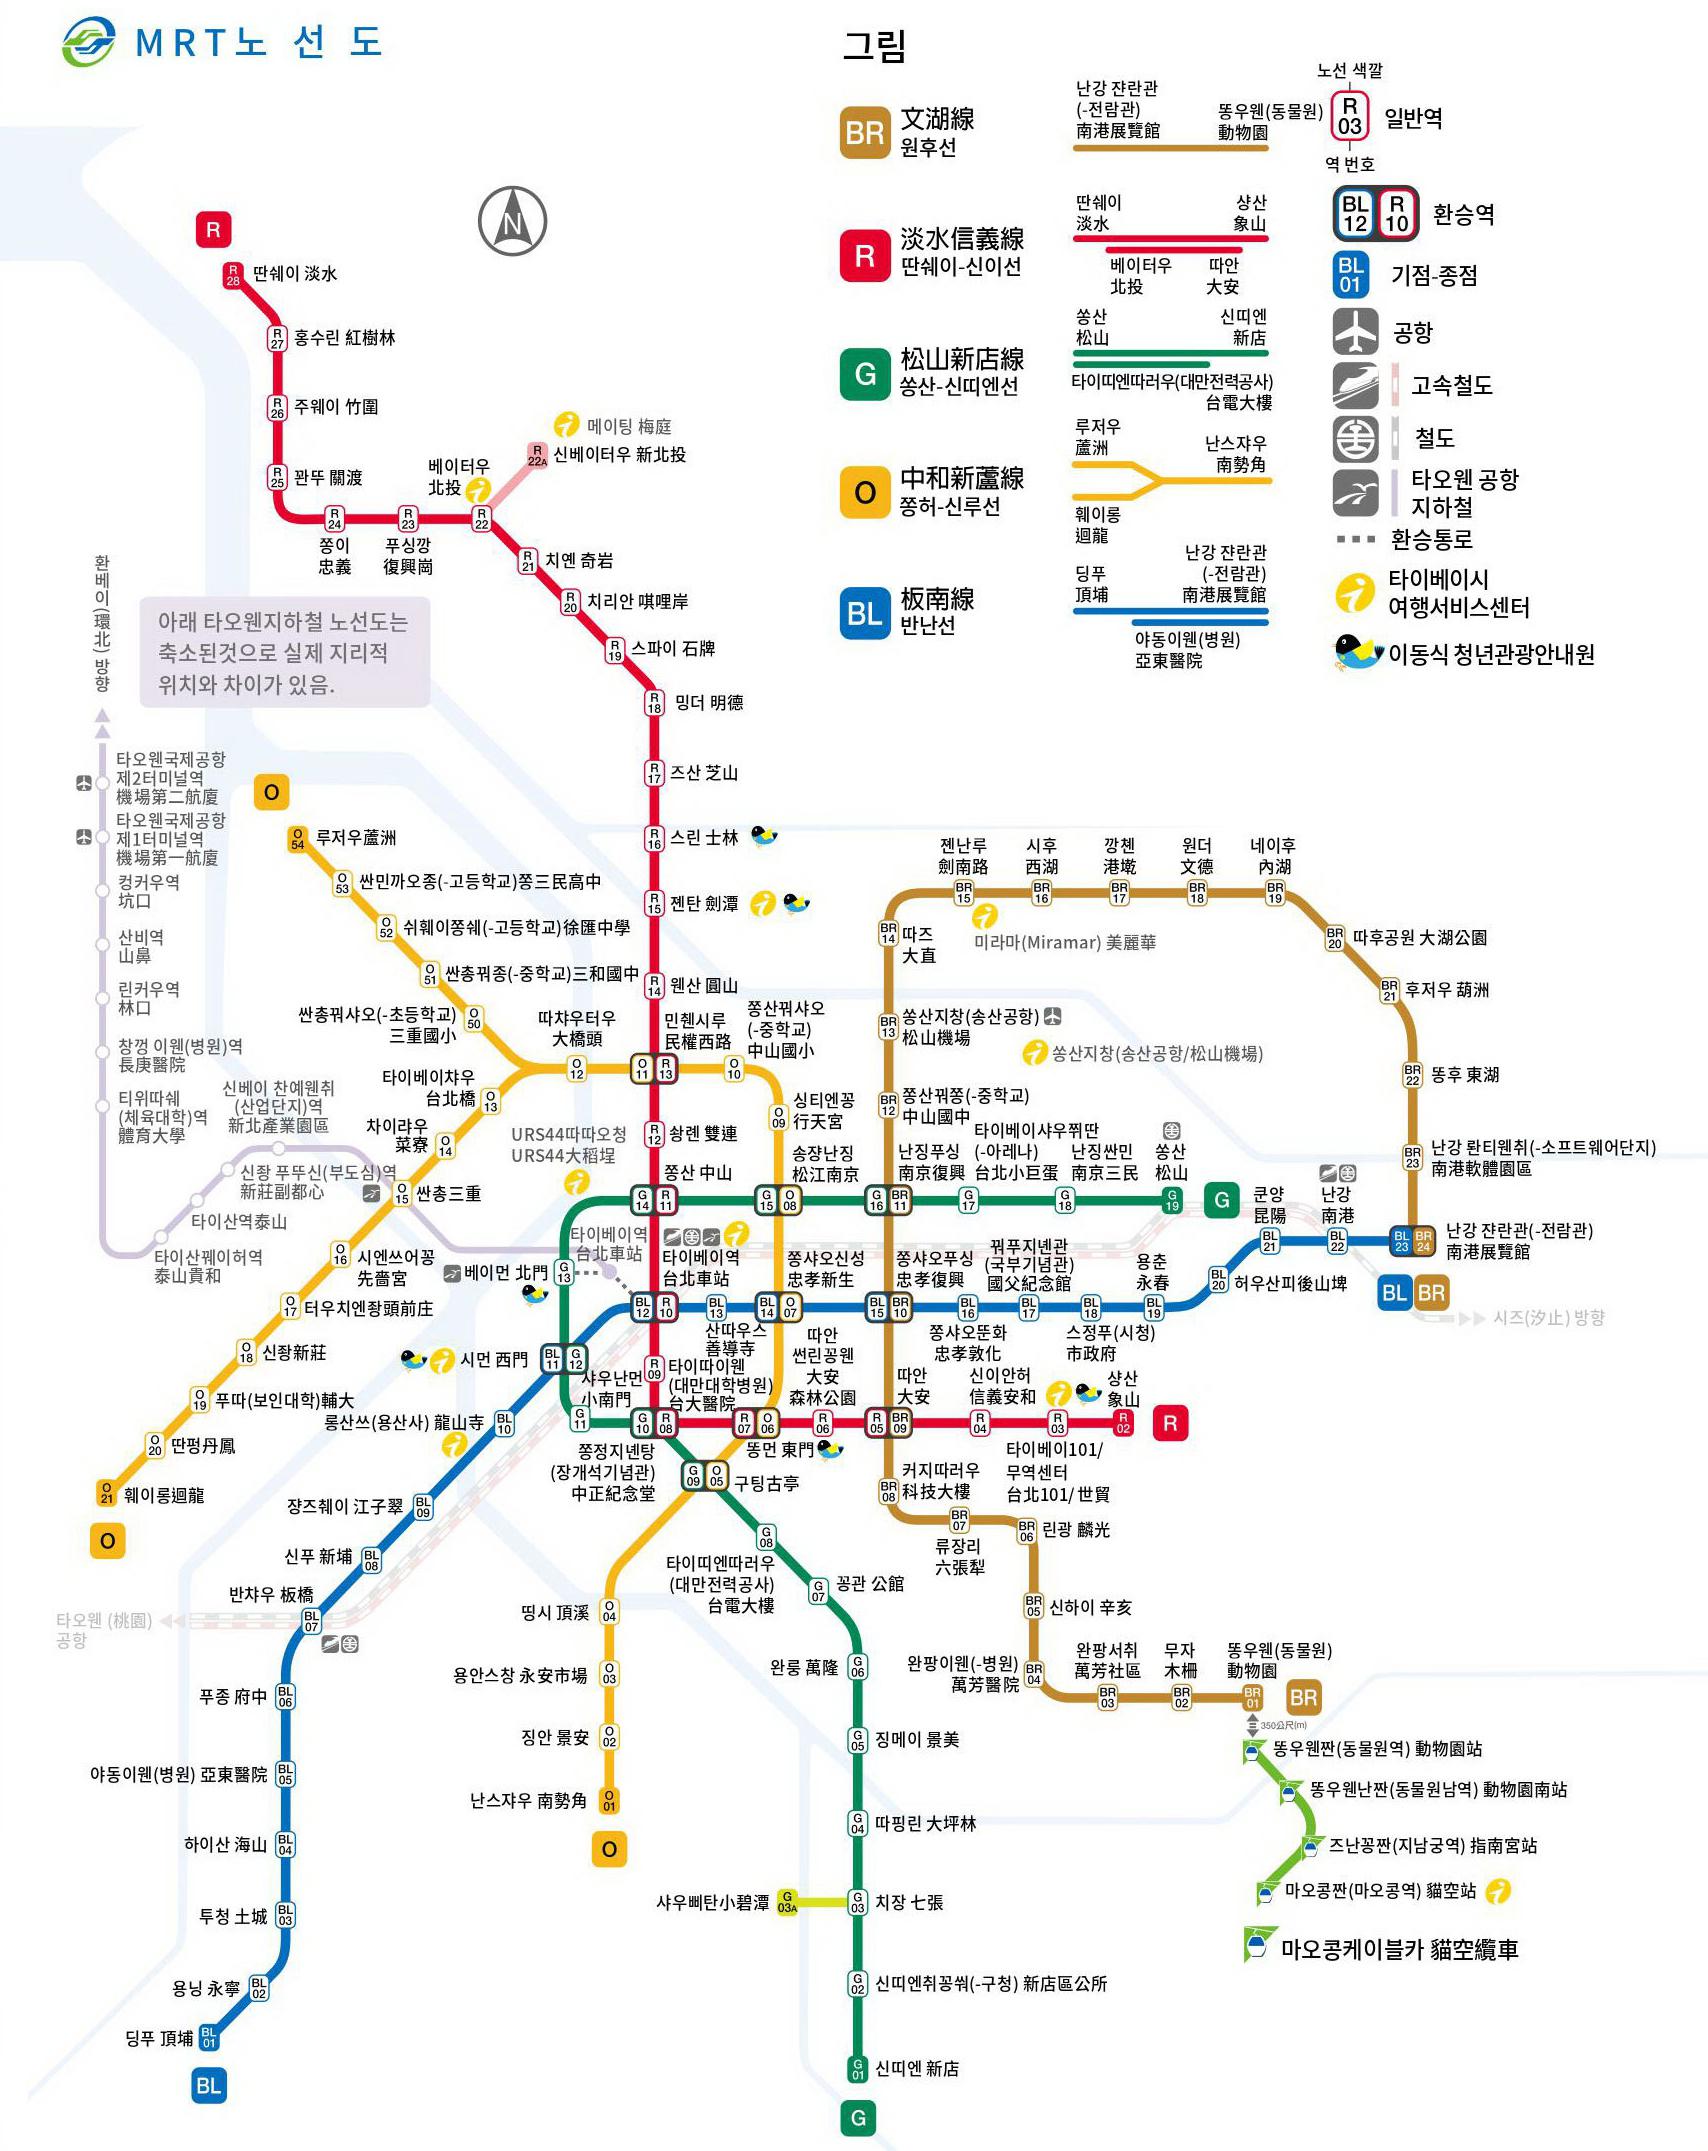 타이페이 지하철 한글, 중국어 노선도 <br />(클릭하여 확대 및 드래그 가능)